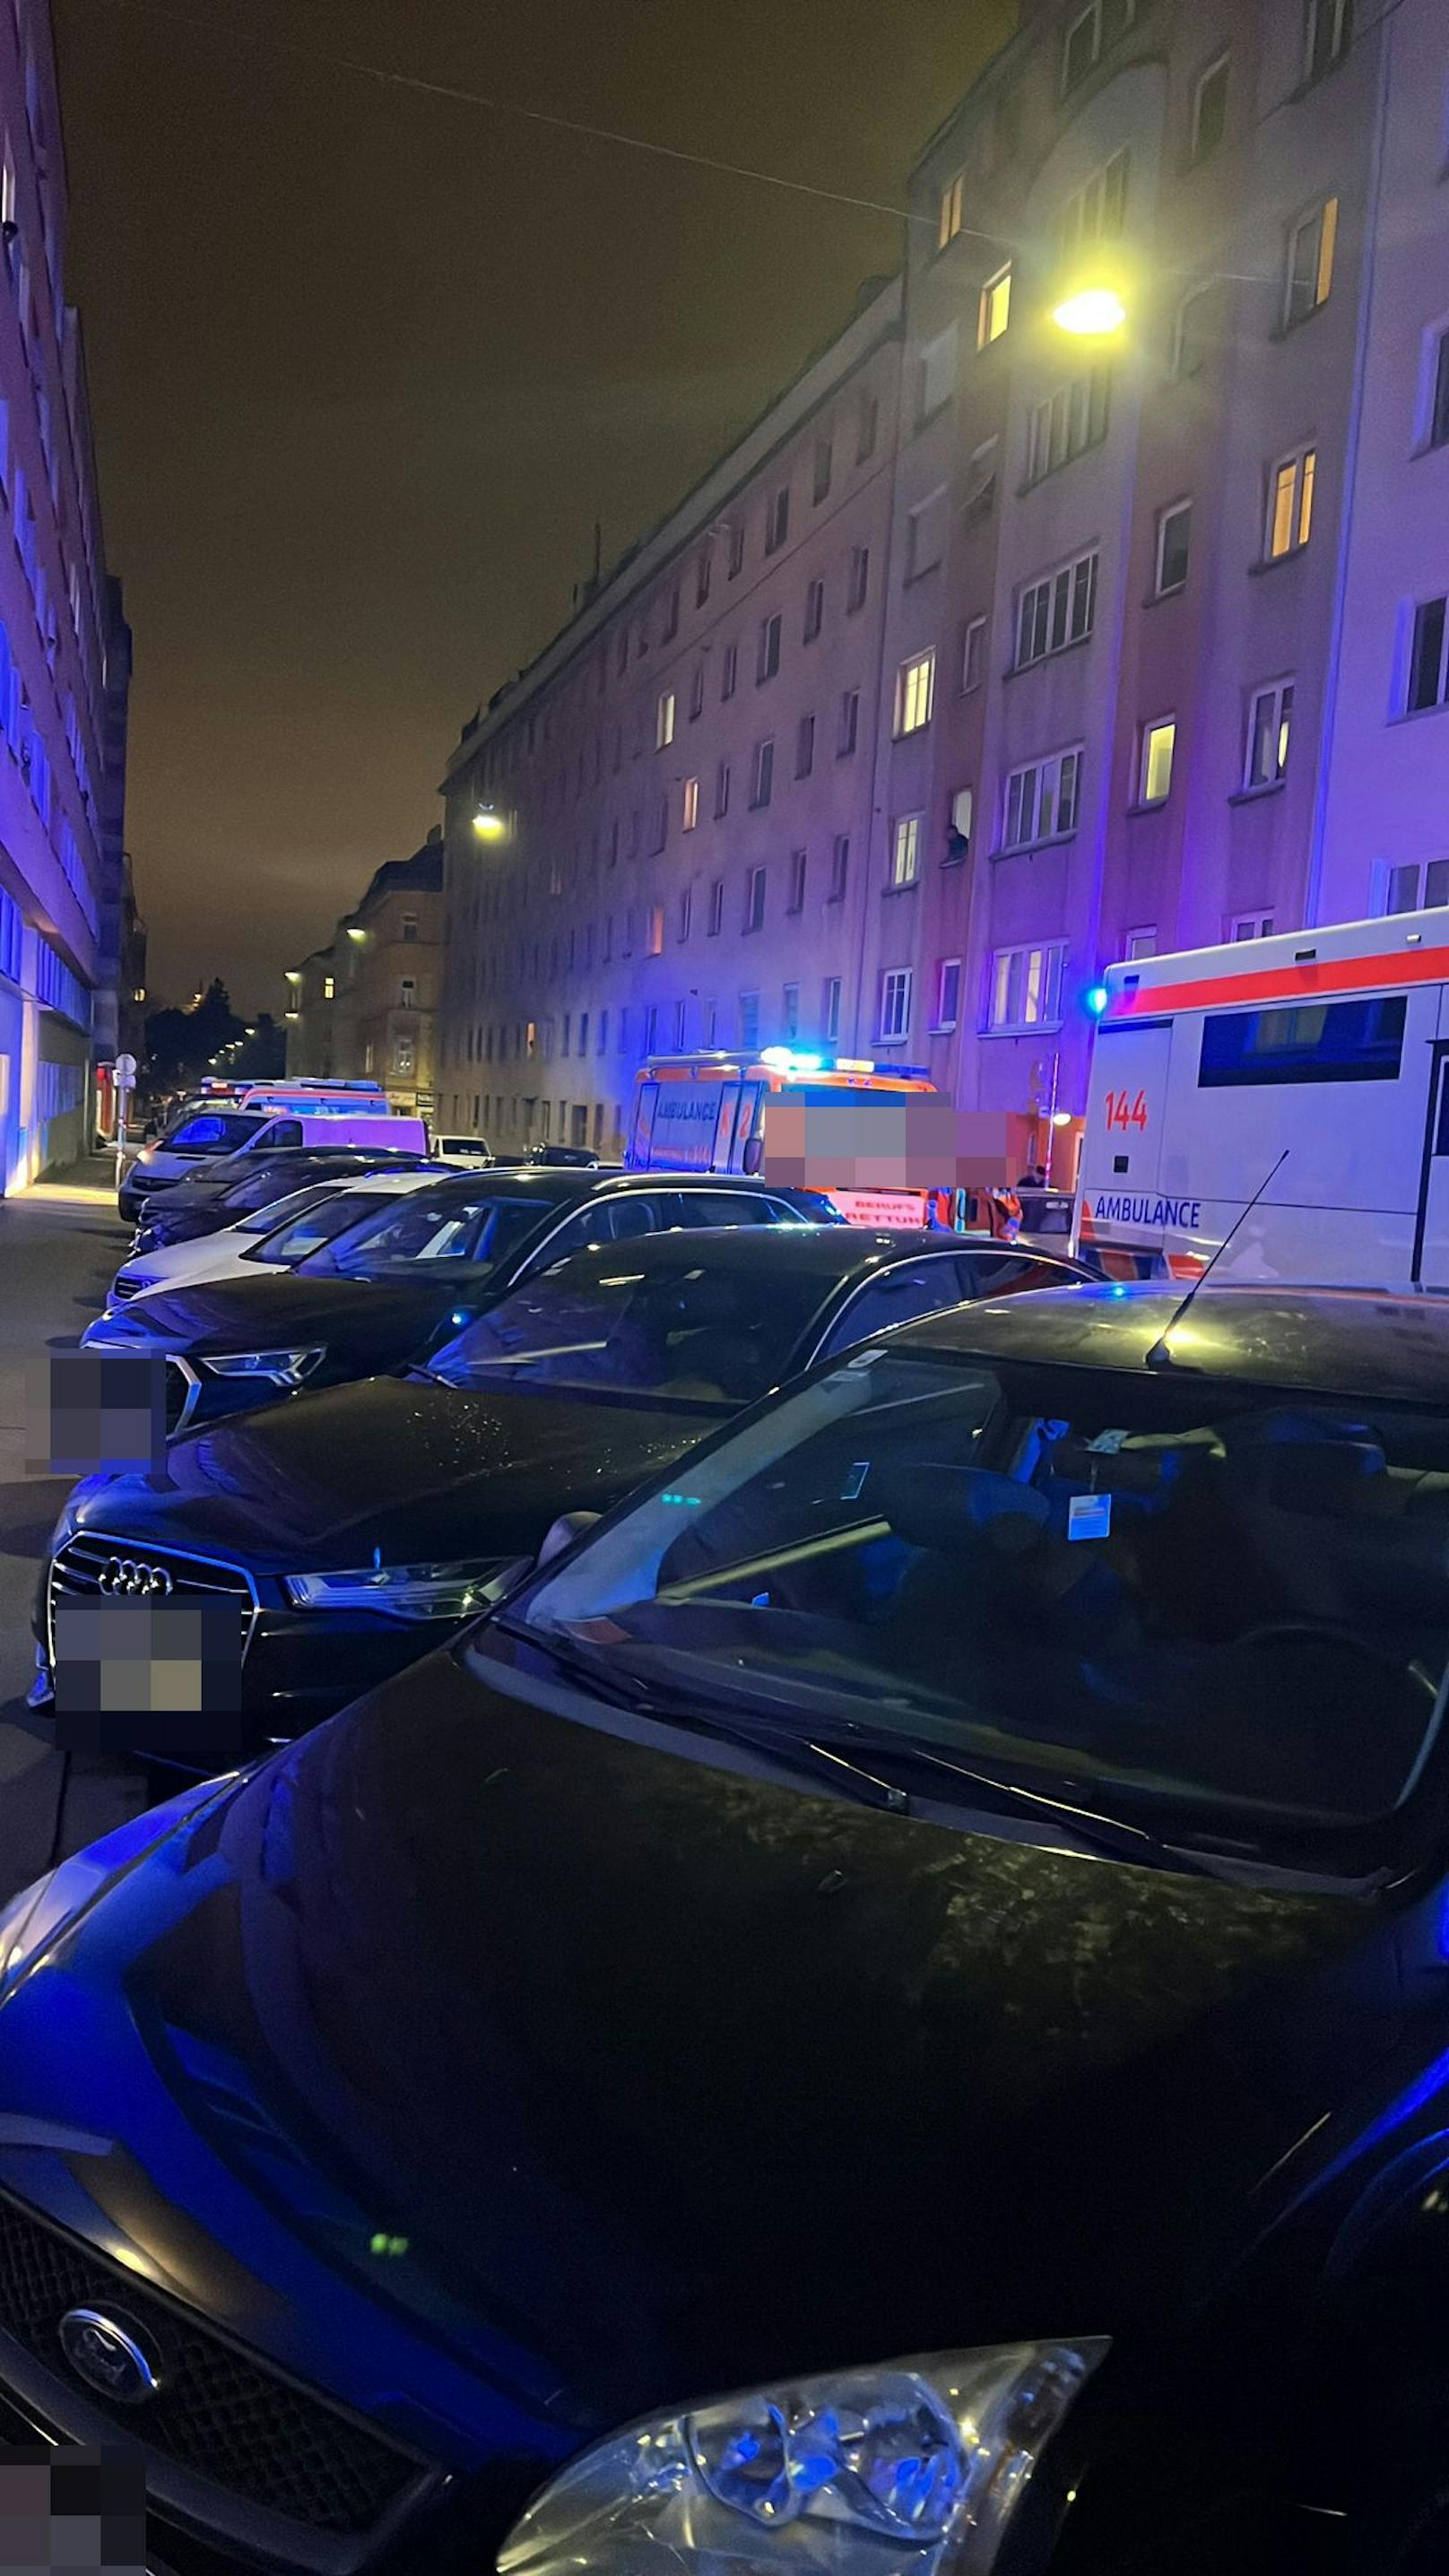 Die Wiener Berufsrettung brachte insgesamt neun Menschen in Rettungsbussen unter.